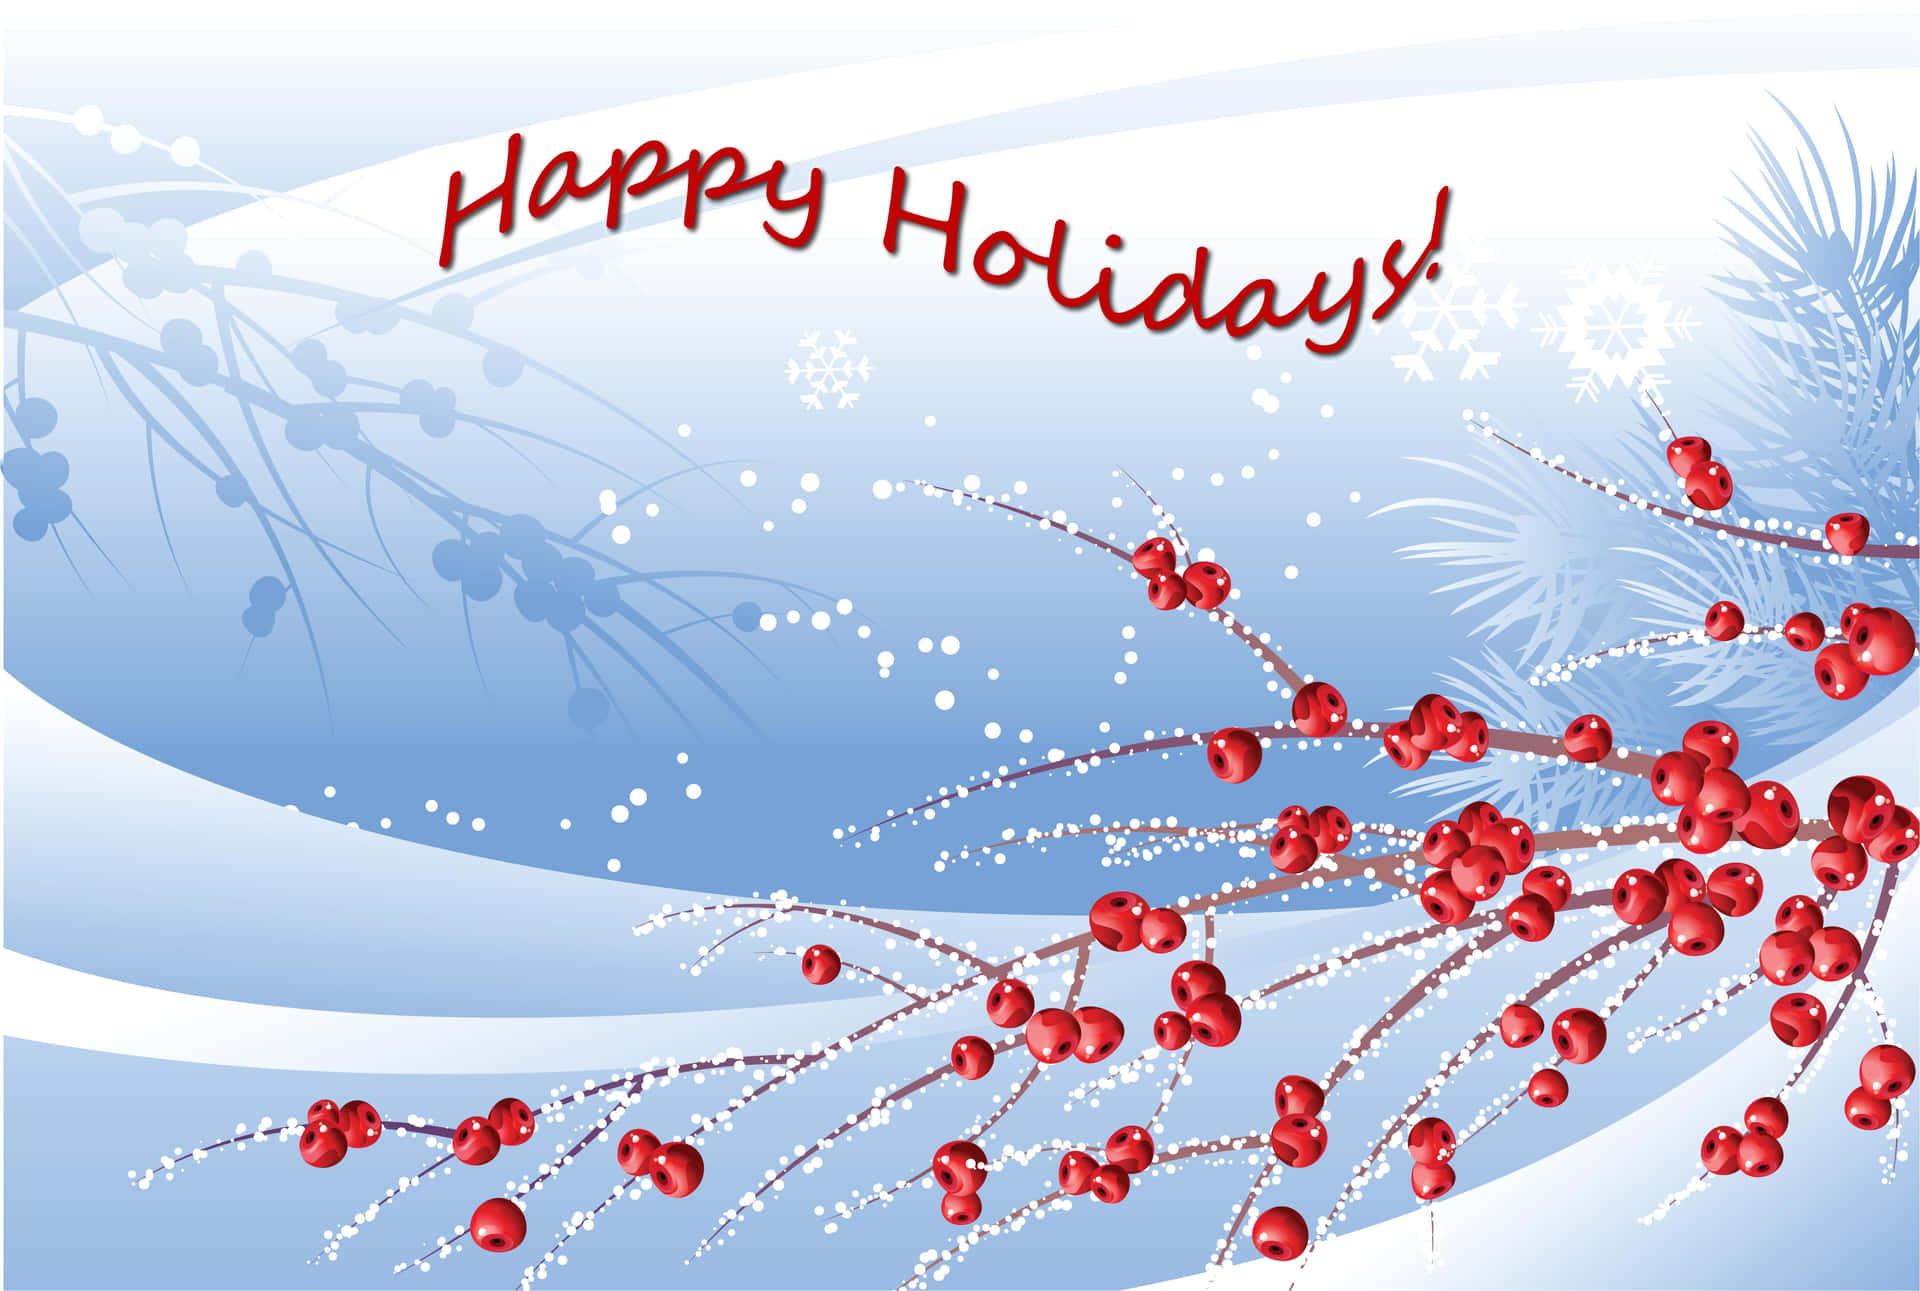 Download Happy Holidays Desktop Wallpaper 